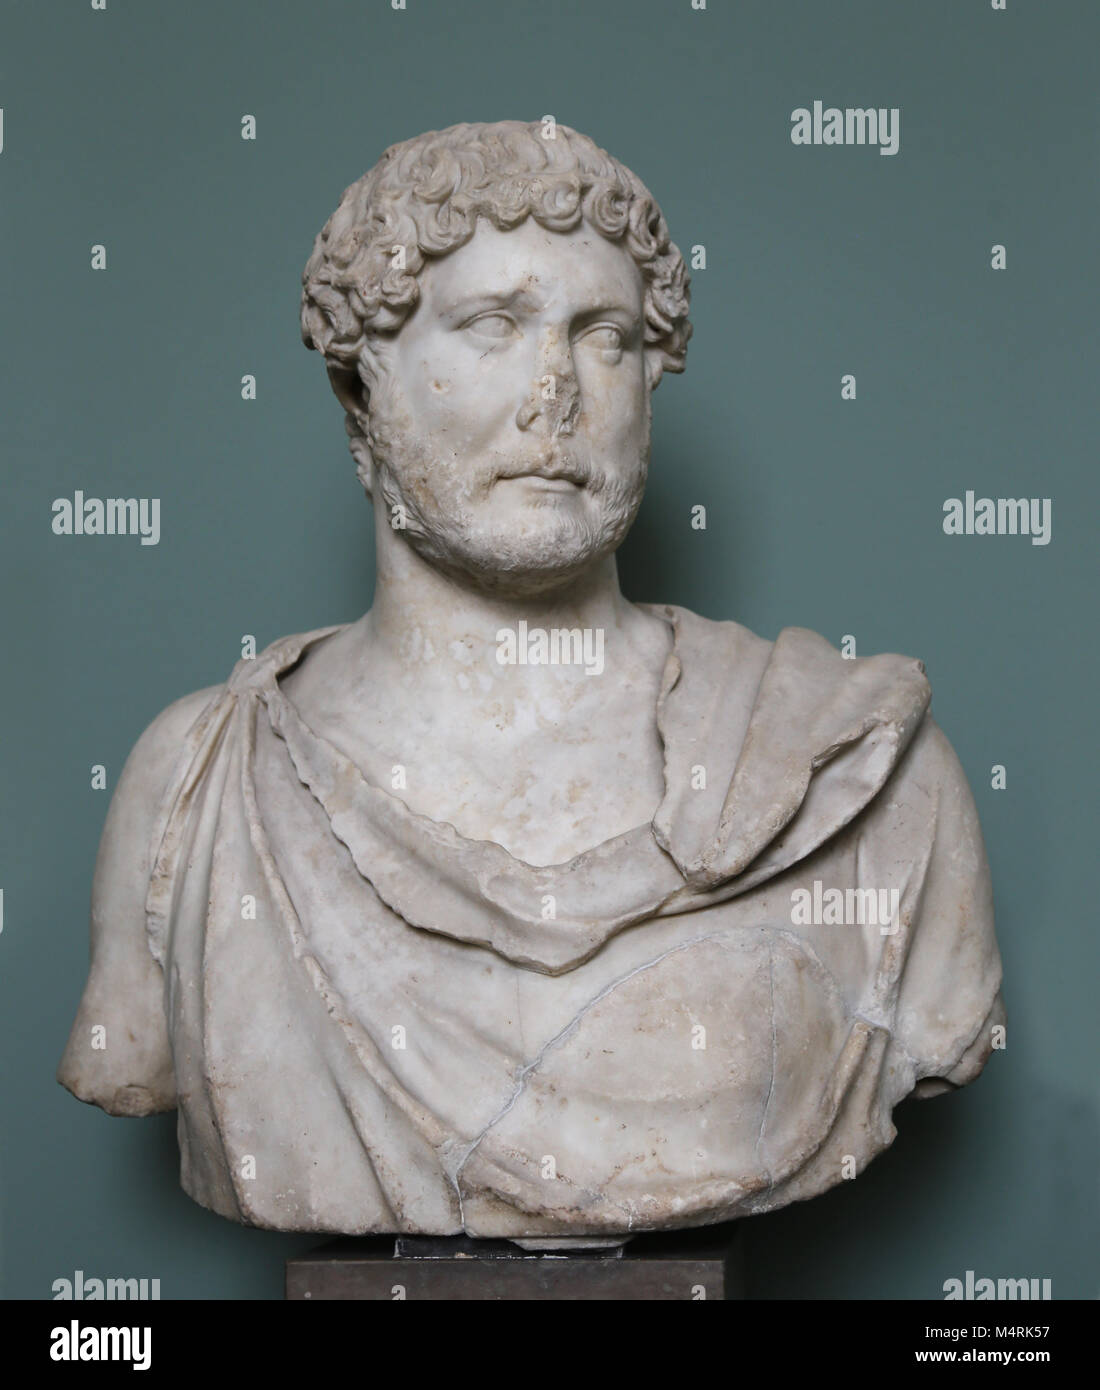 Portrait von Hadrian (76-138 AD), römischer Kaiser (117-138 AD). Marmorbüste von Rom 125-138 AD. NY Carlsberg Glyptotek. Stockfoto